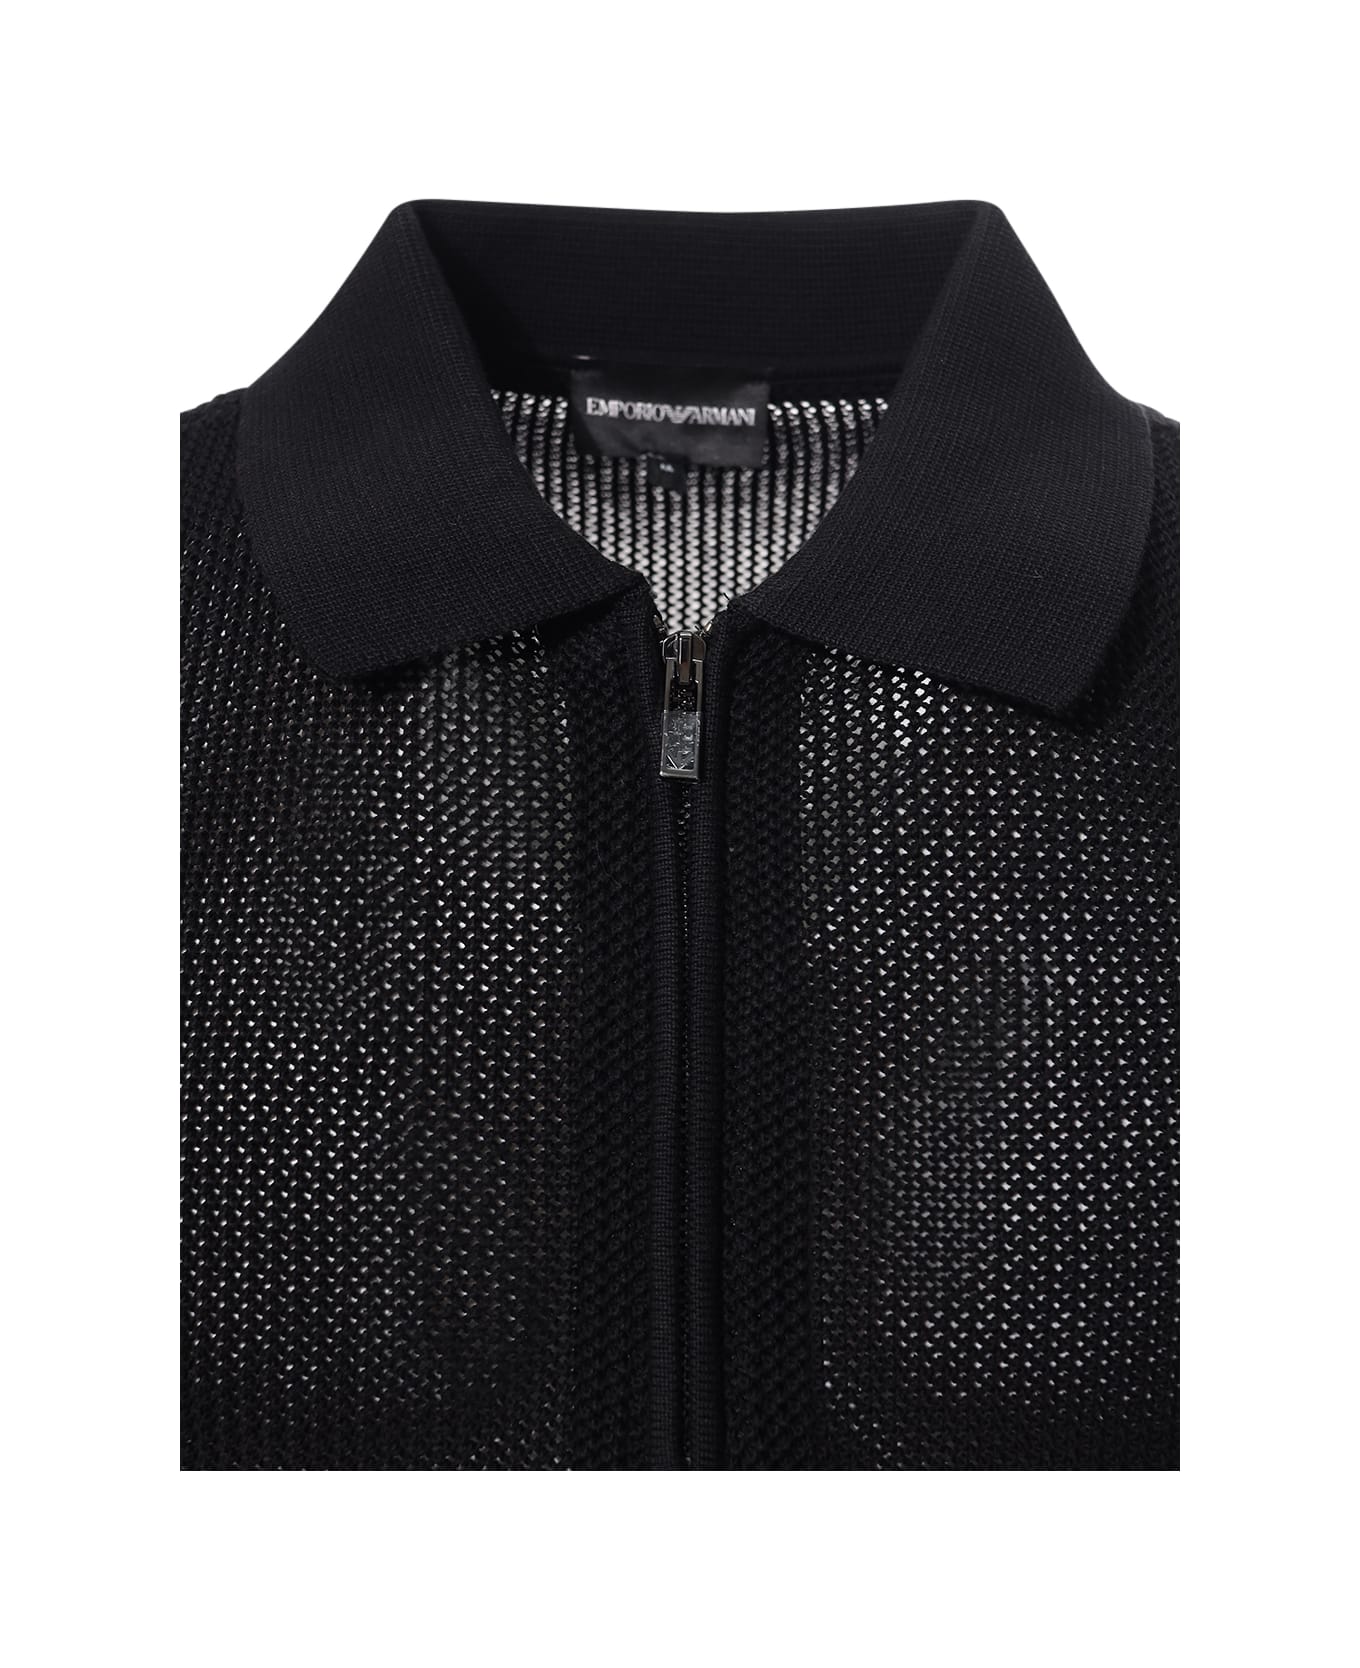 Emporio Armani Polo Neck Sweater - Black